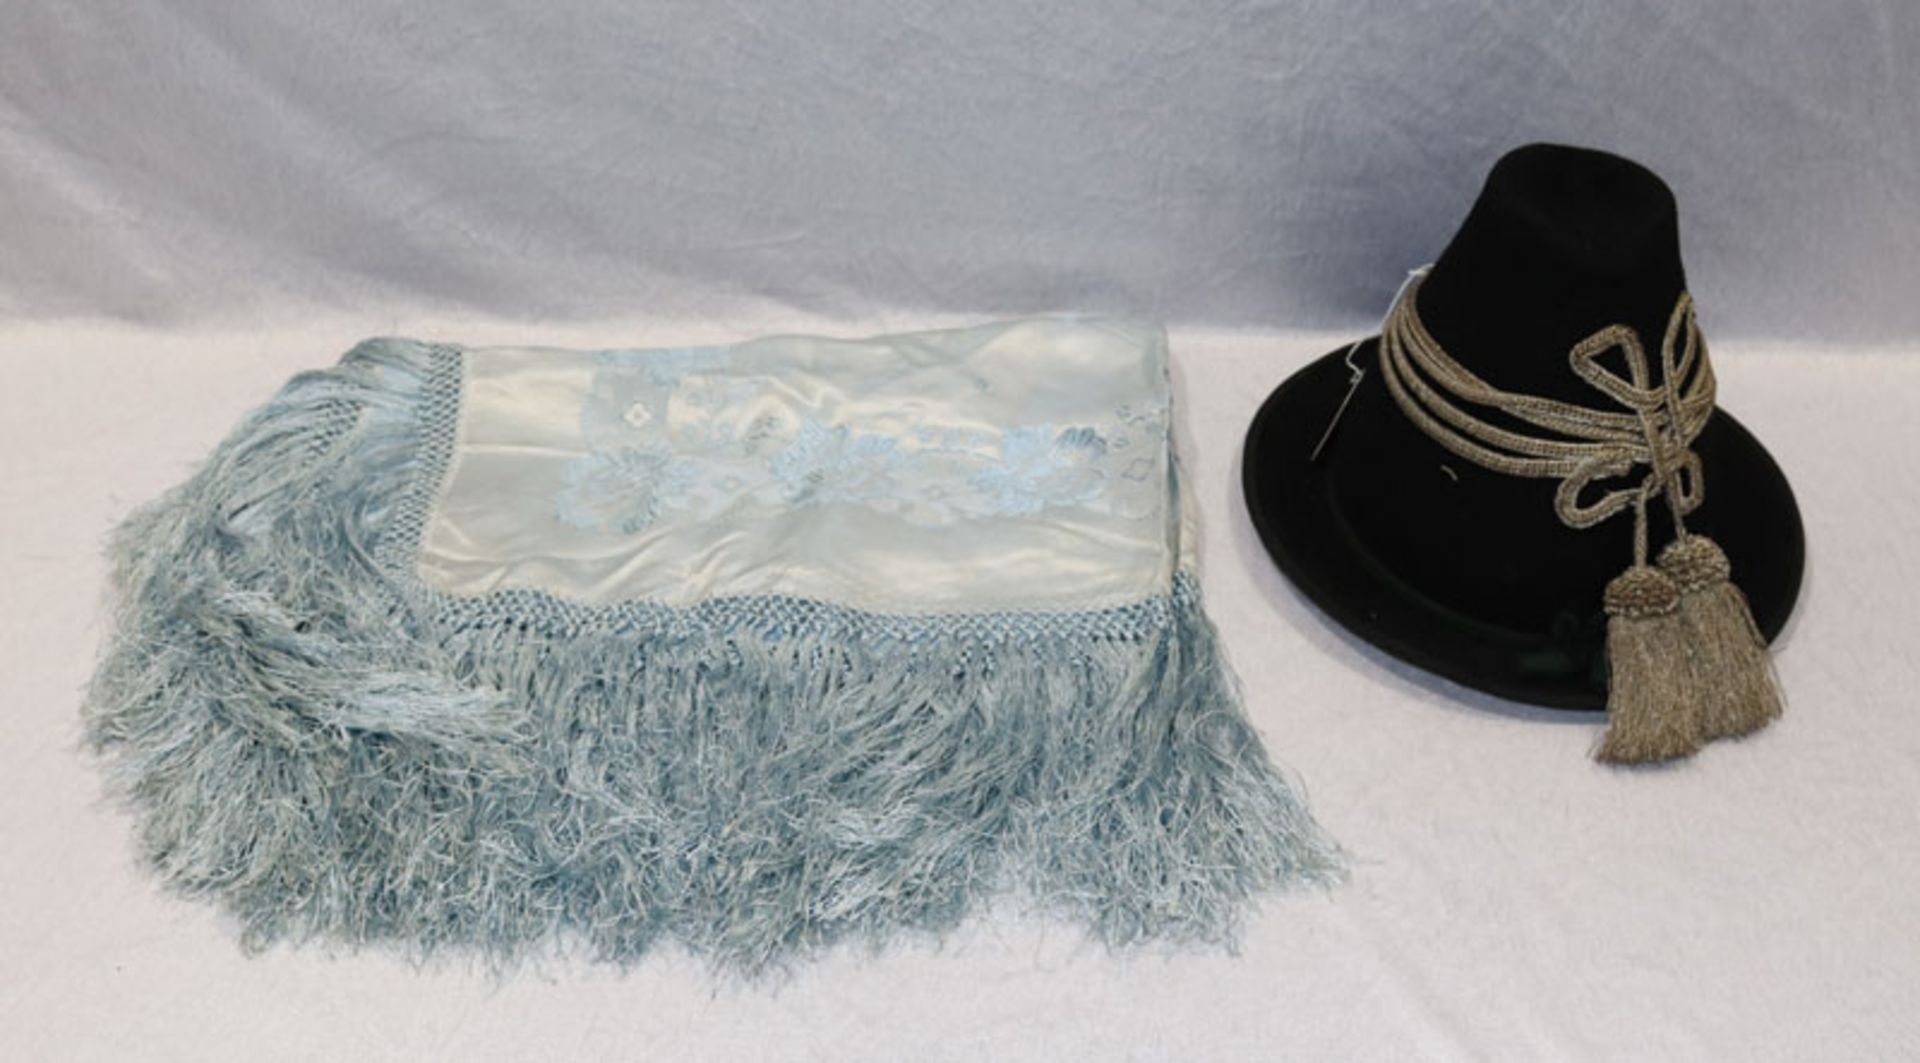 Trachtenhut mit Silberkordel und Quasten, Tragespuren, und hellblaues Trachtentuch, getragen